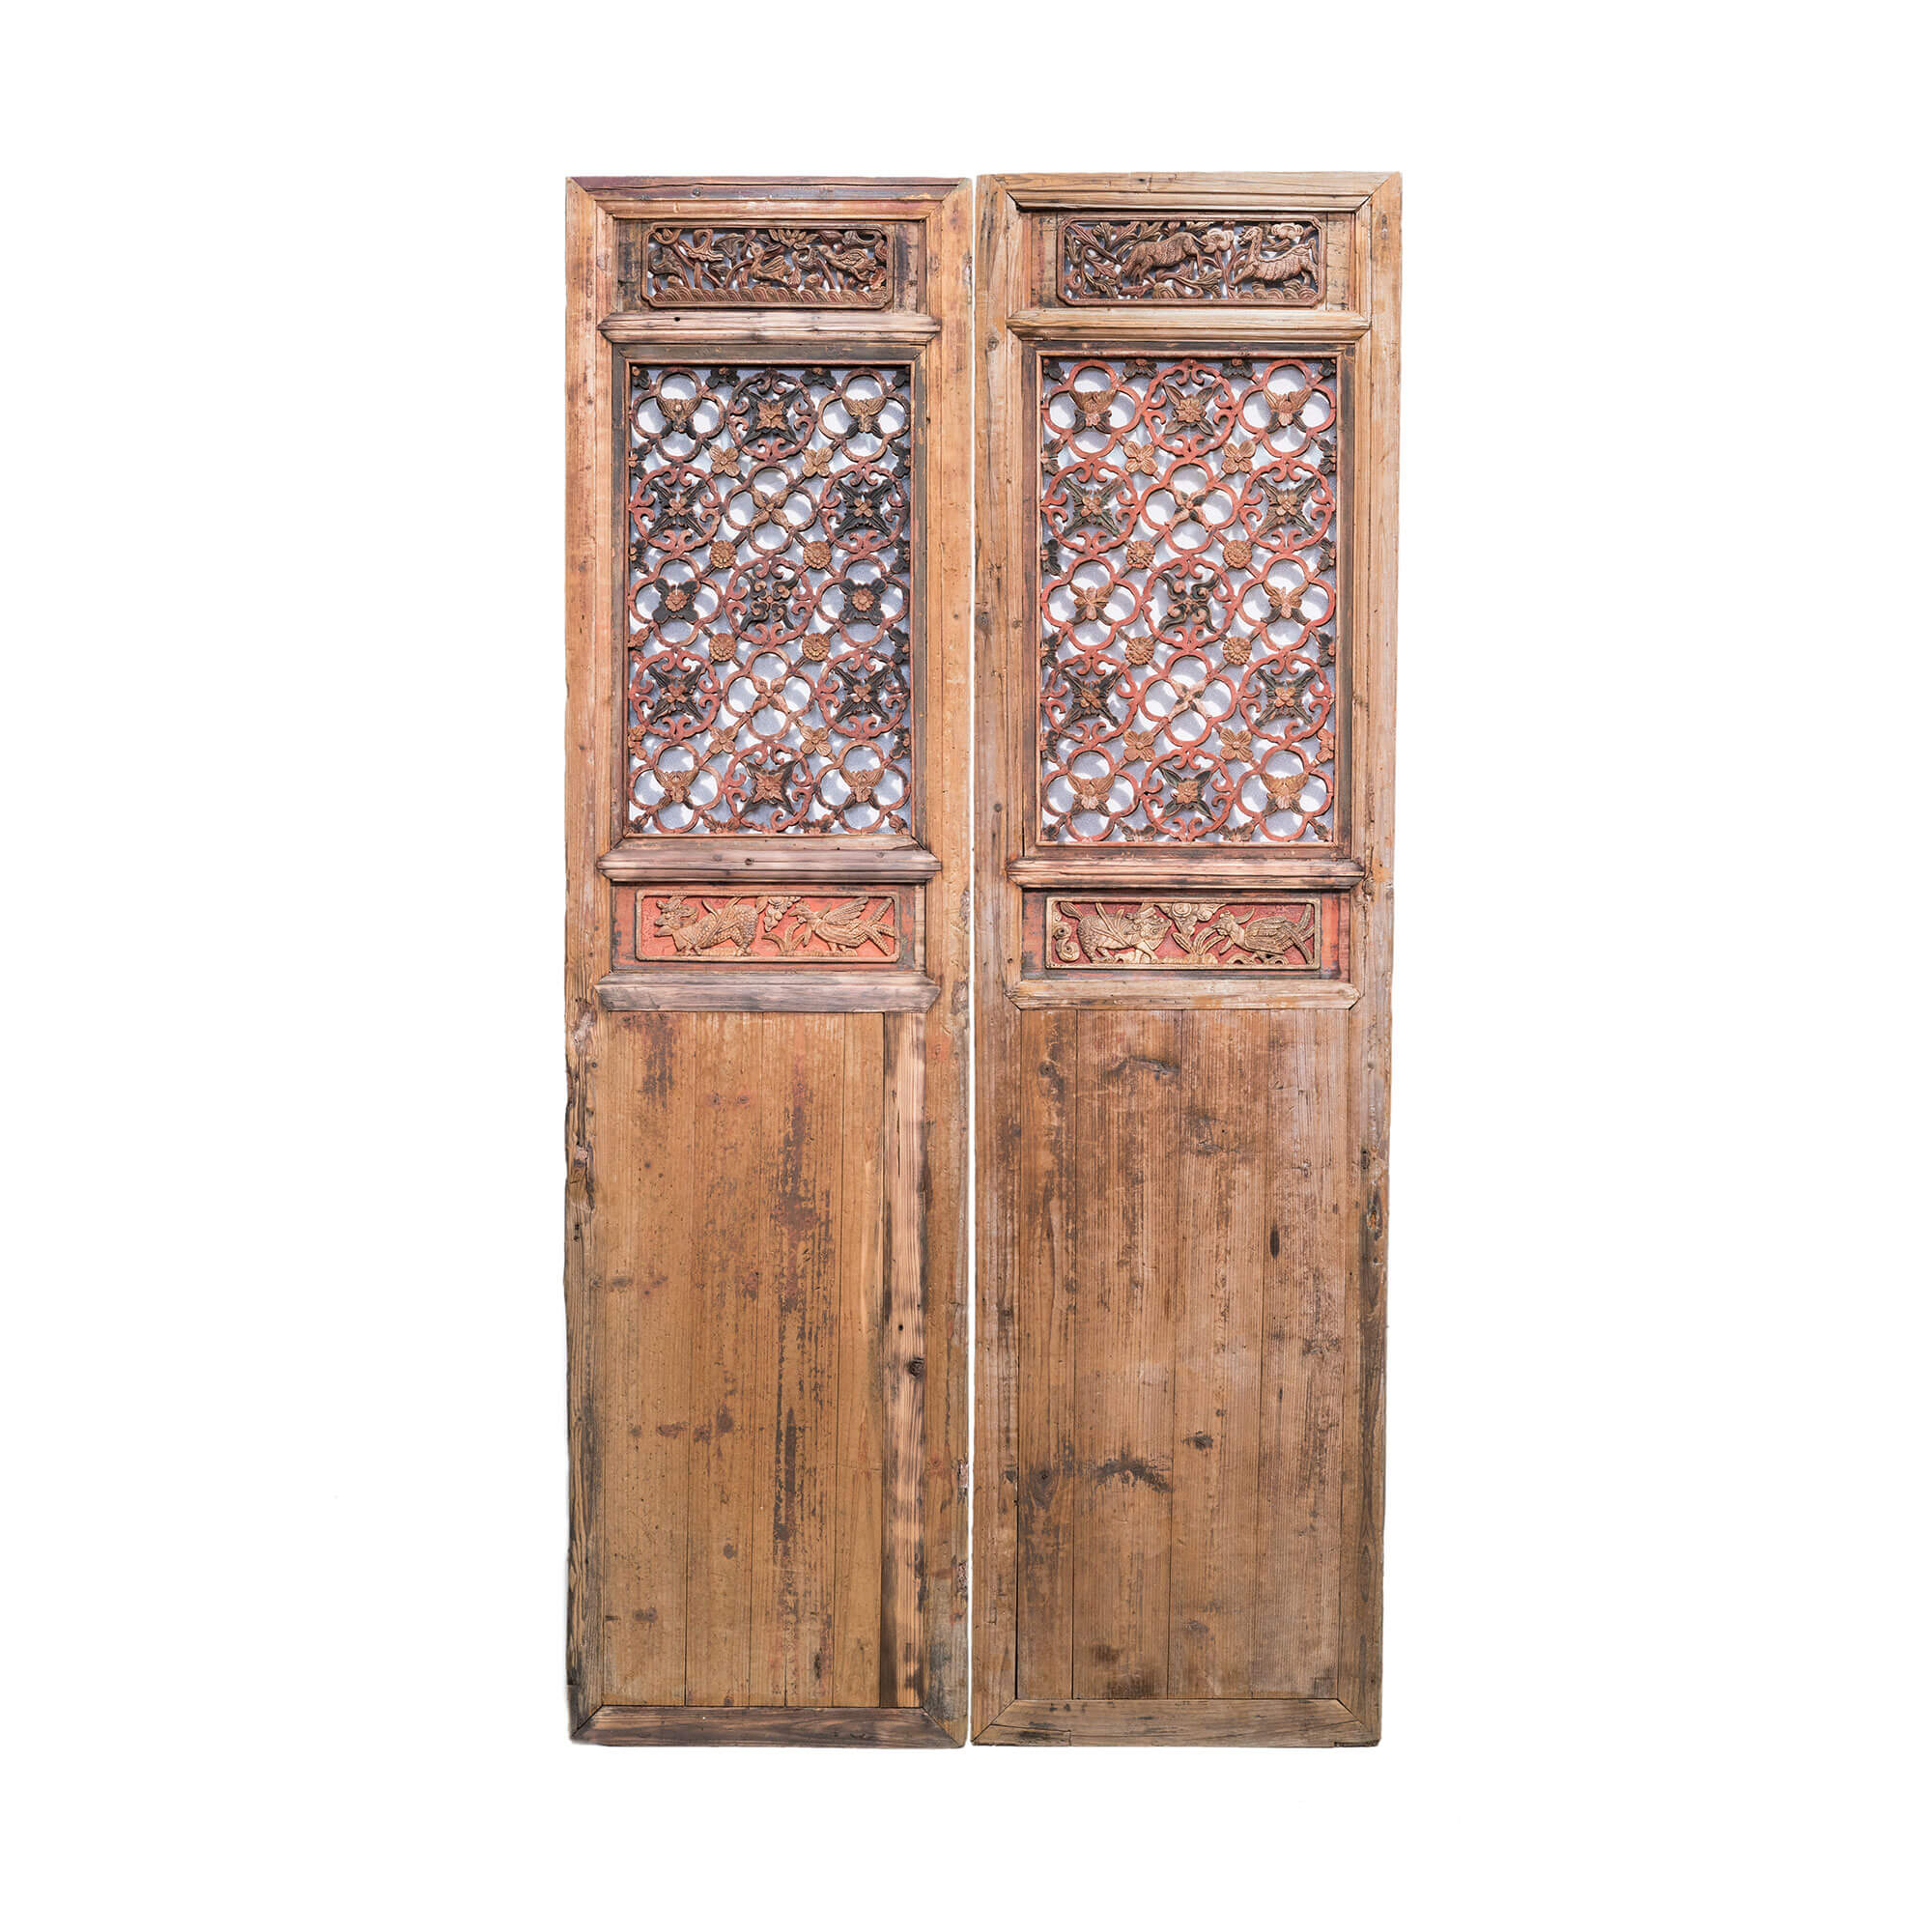 Chinese antique door